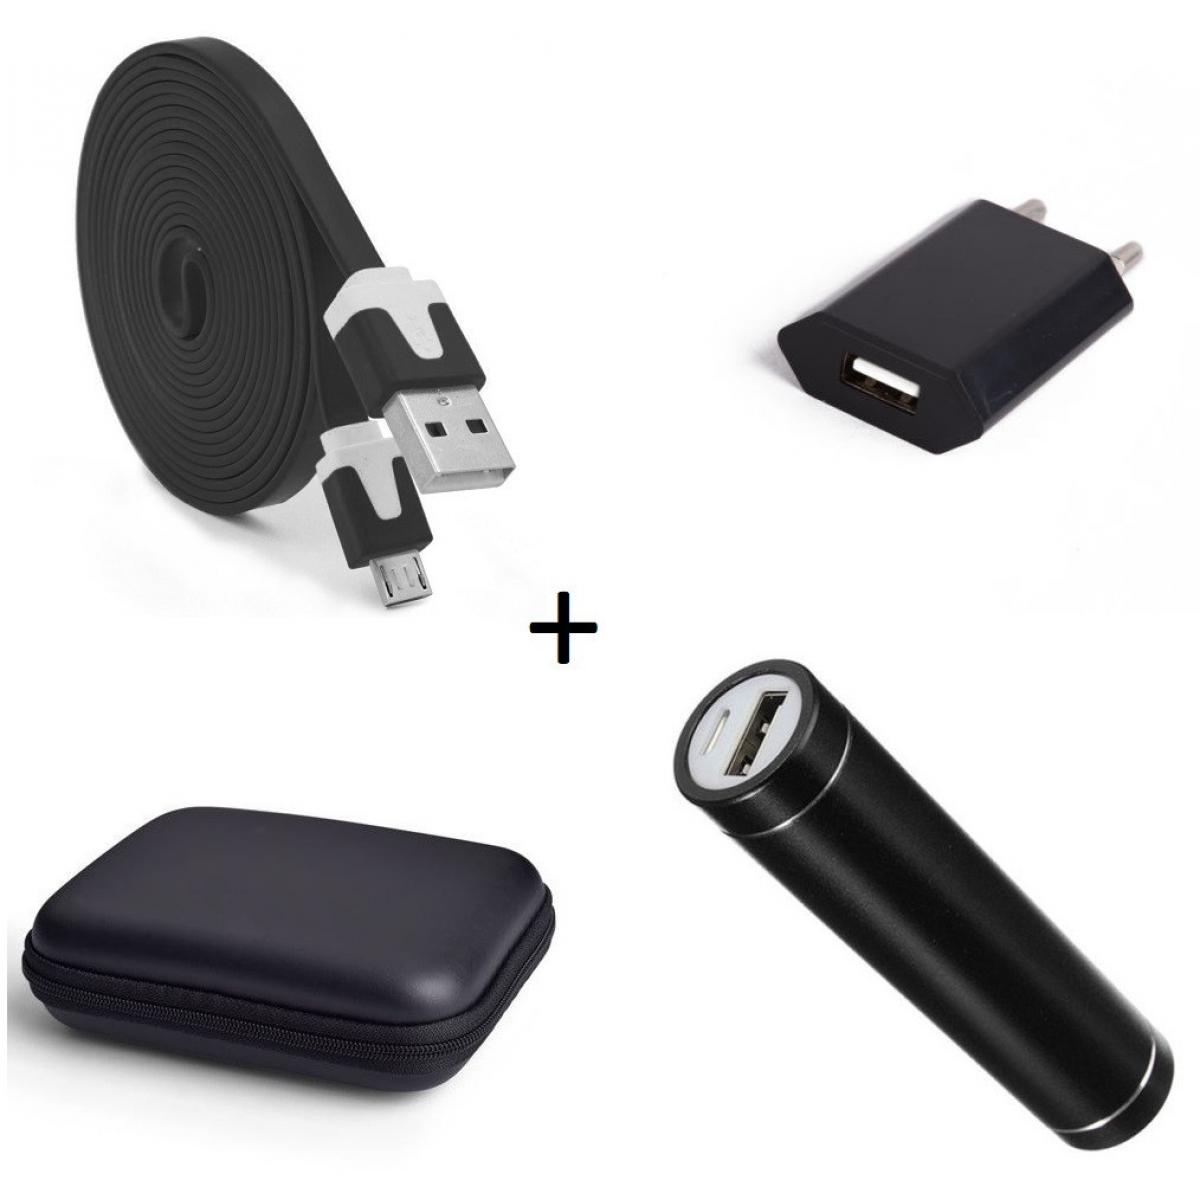 Shot - Pack pour WIKO Y80 (Cable Chargeur Noodle Micro USB + Pochette + Batterie + Prise Secteur) Android (NOIR) - Chargeur secteur téléphone